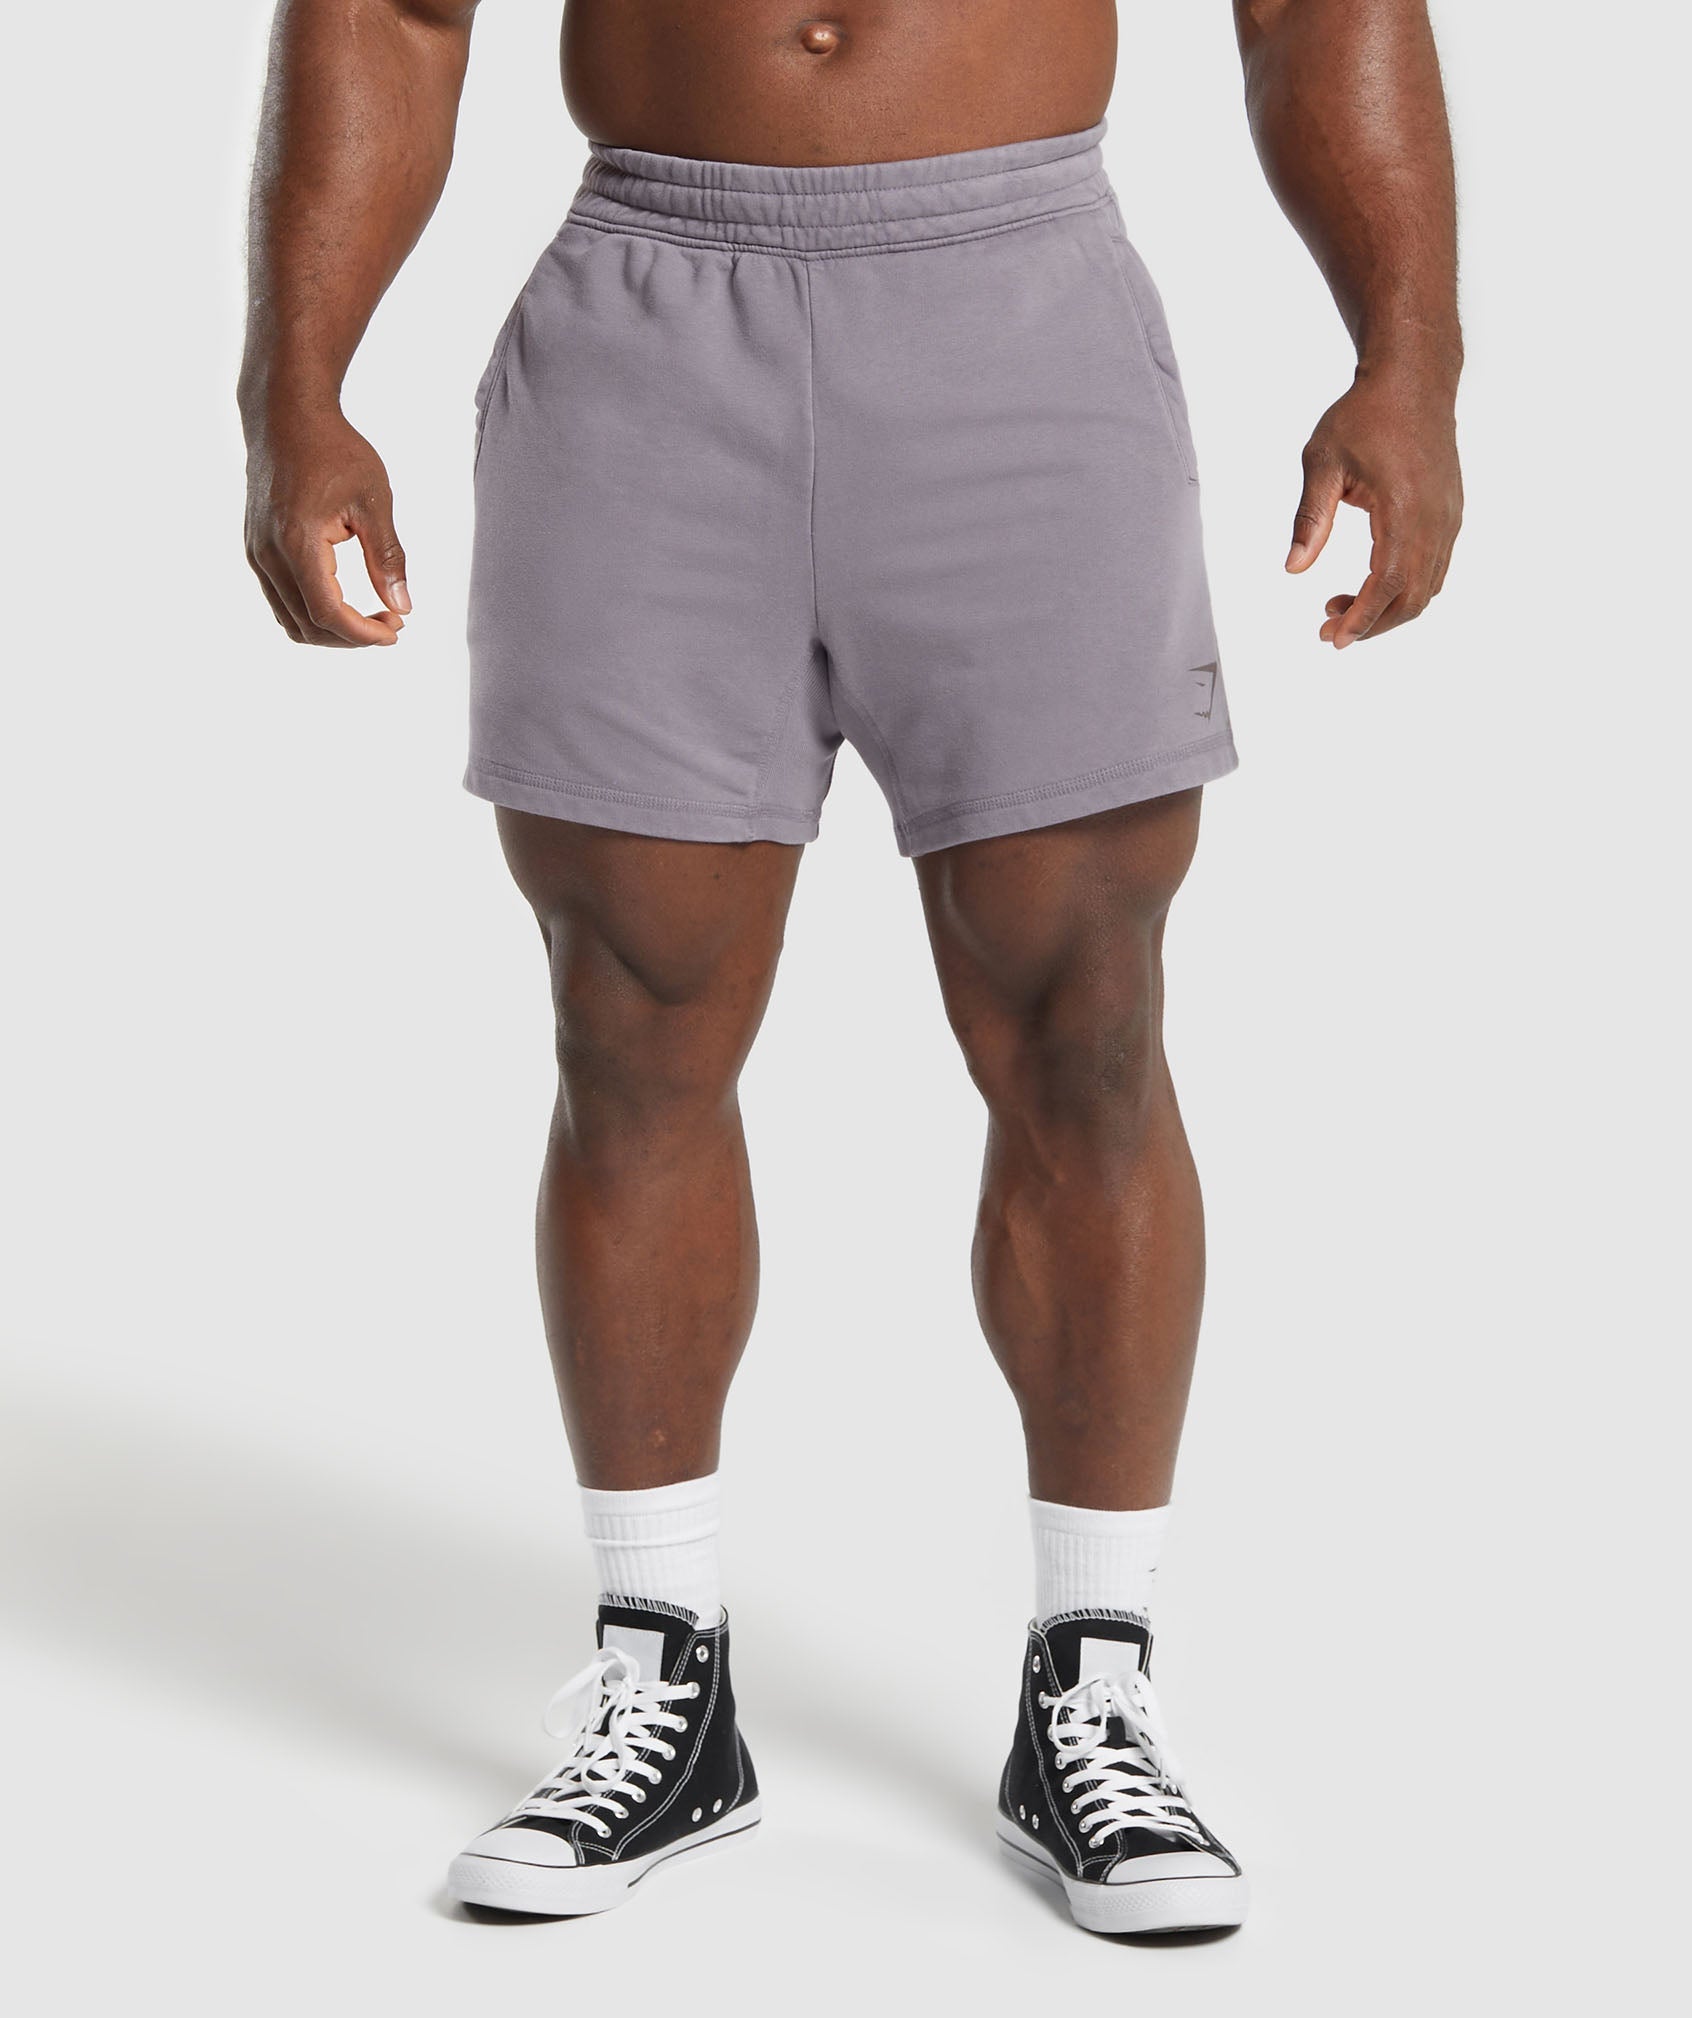 Gymshark Crossover Shorts - Washed Mauve